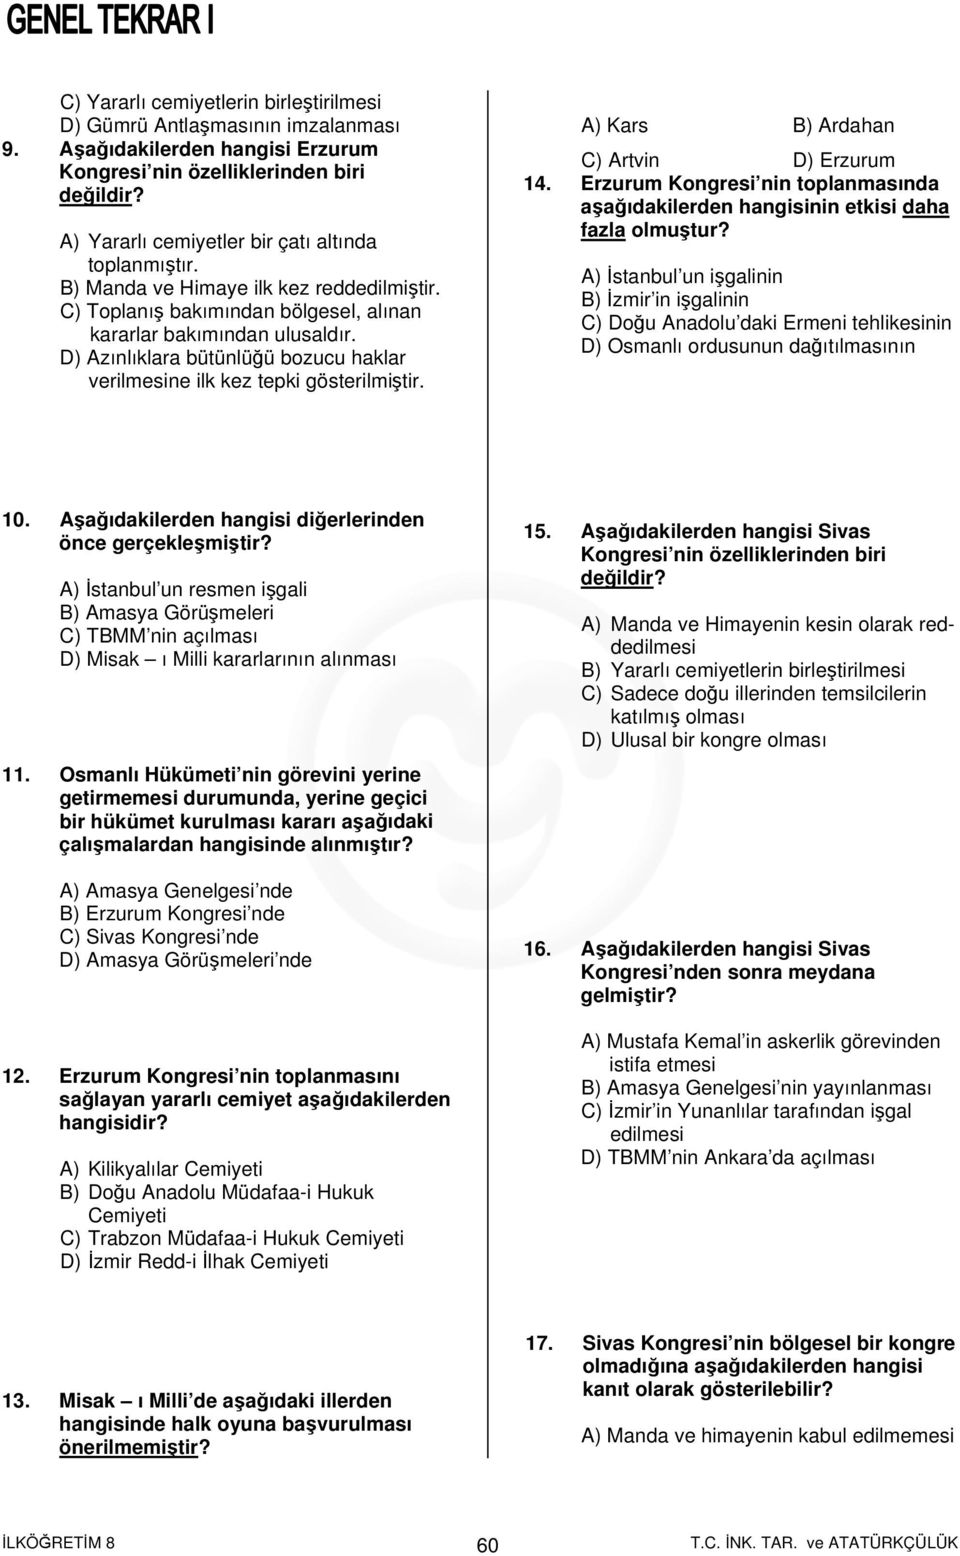 D) Azınlıklara bütünlüğü bozucu haklar verilmesine ilk kez tepki gösterilmiştir. A) Kars B) Ardahan C) Artvin D) Erzurum 14.